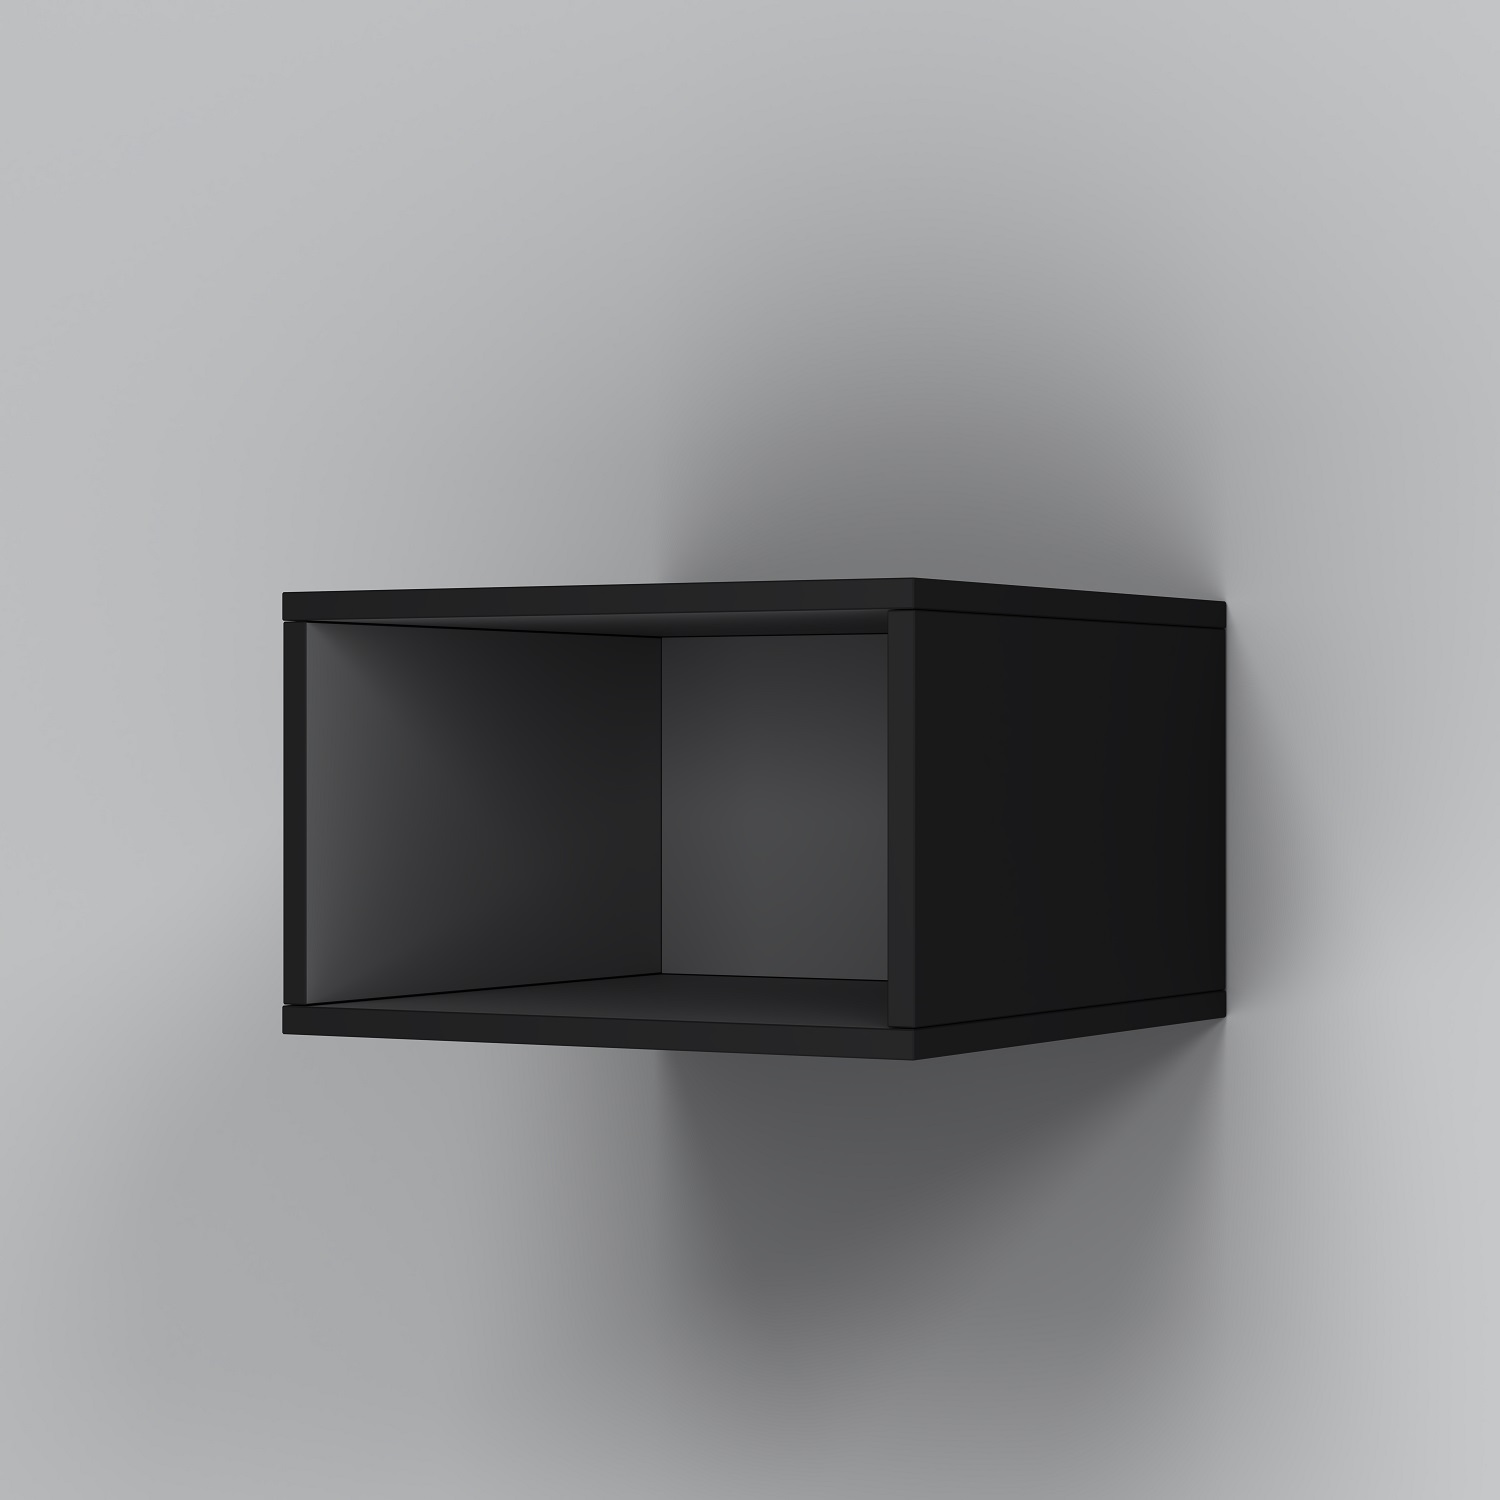 M8FOH0401BM Func open-space для мебели, 40 см, цвет черный матовый